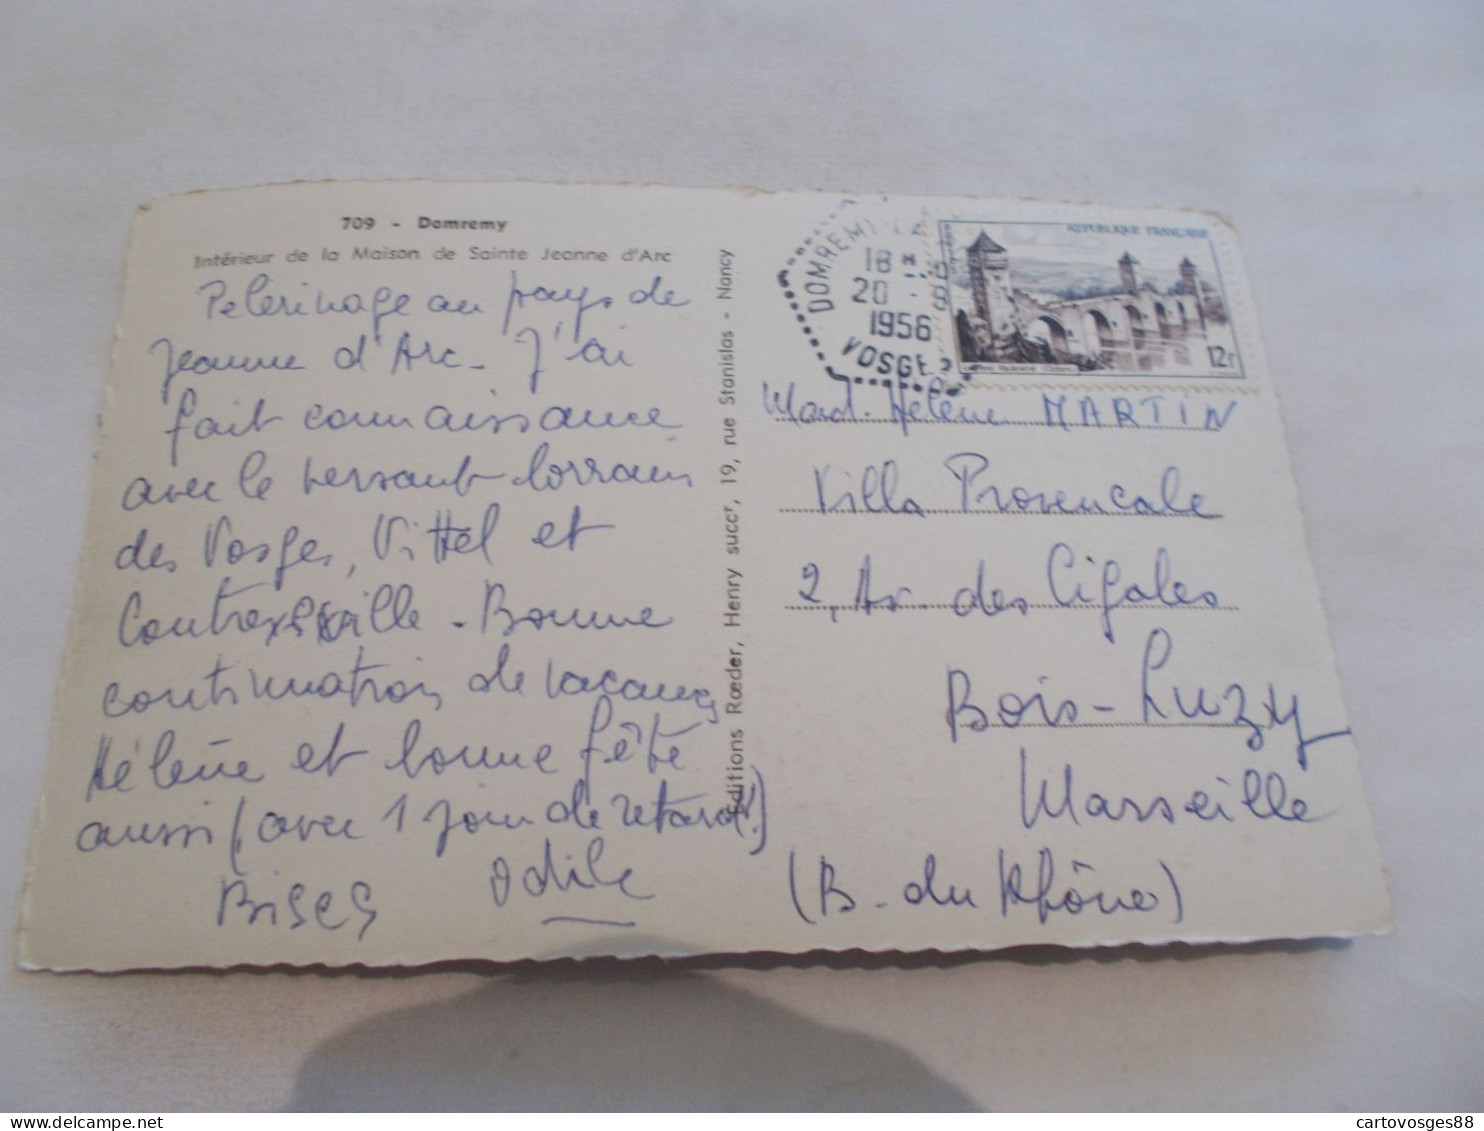 DOMREMY ( 88 Vosges ) INTERIEUR DE LA MAISON DE SAINTE JEANNE D ARC  1956 - Domremy La Pucelle